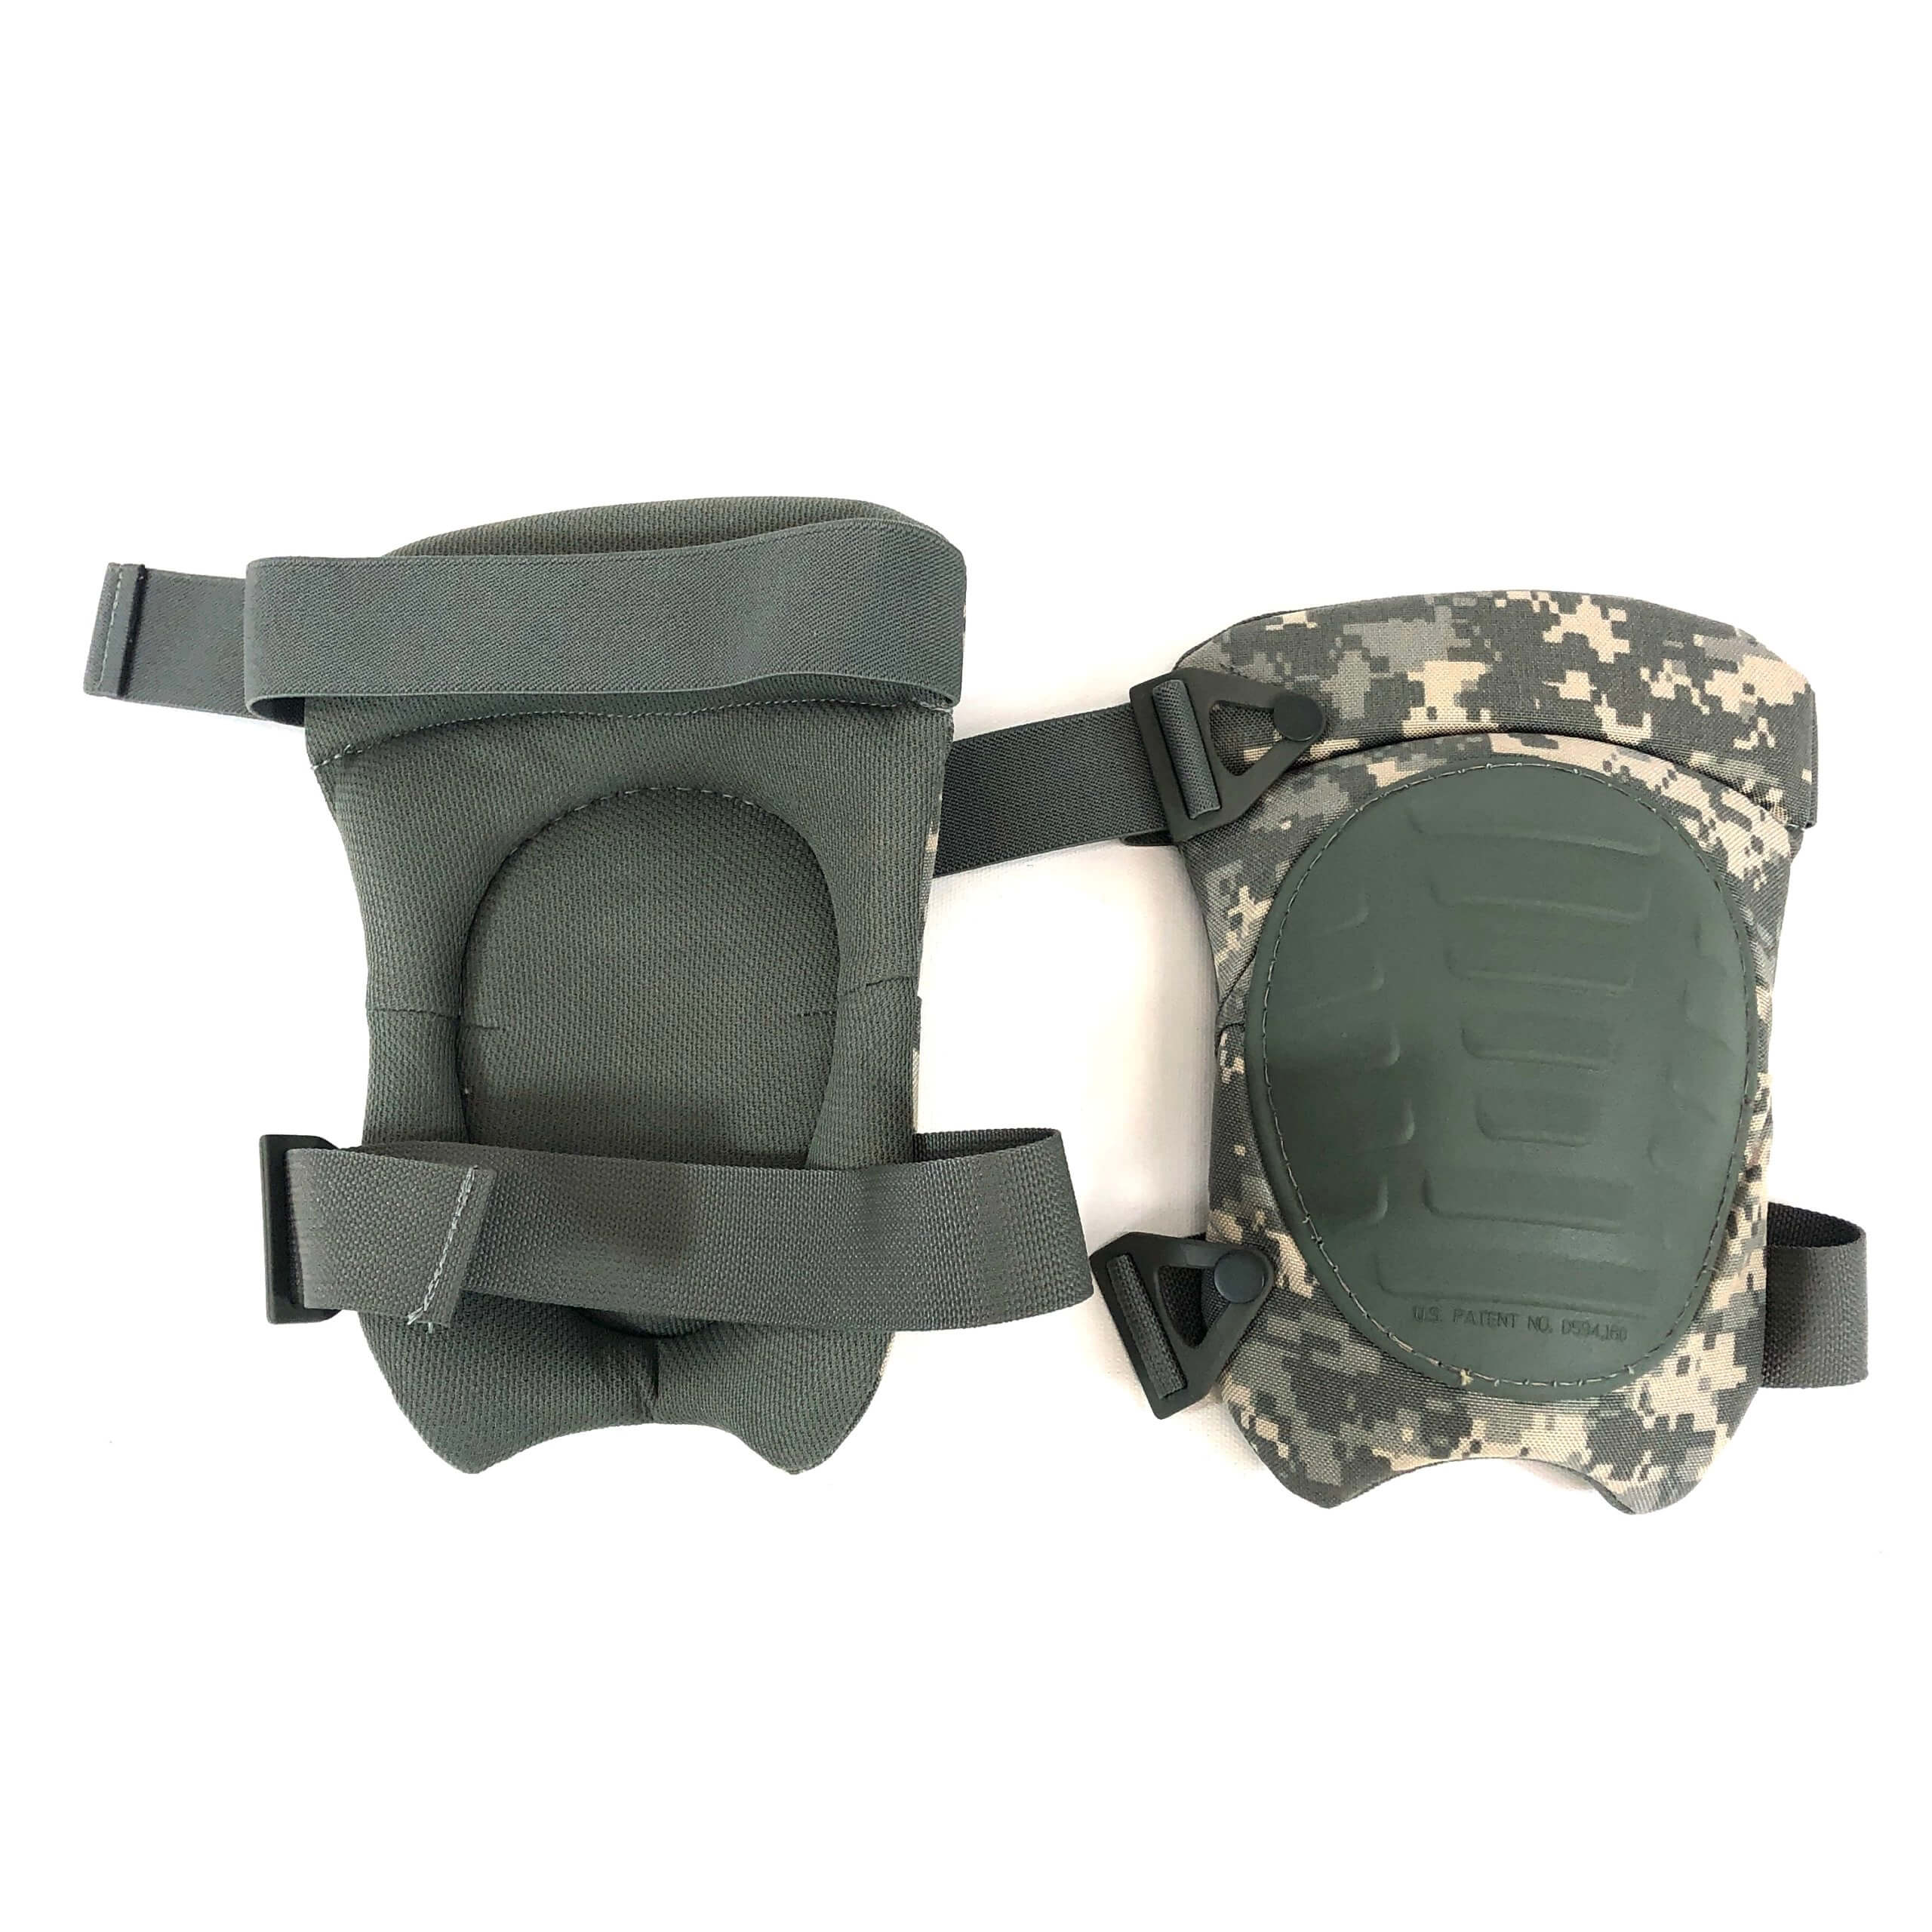 Elbow & Knee Pad Set USGI McGuire Nicholas US Army Military ACU Digital OS NICE 